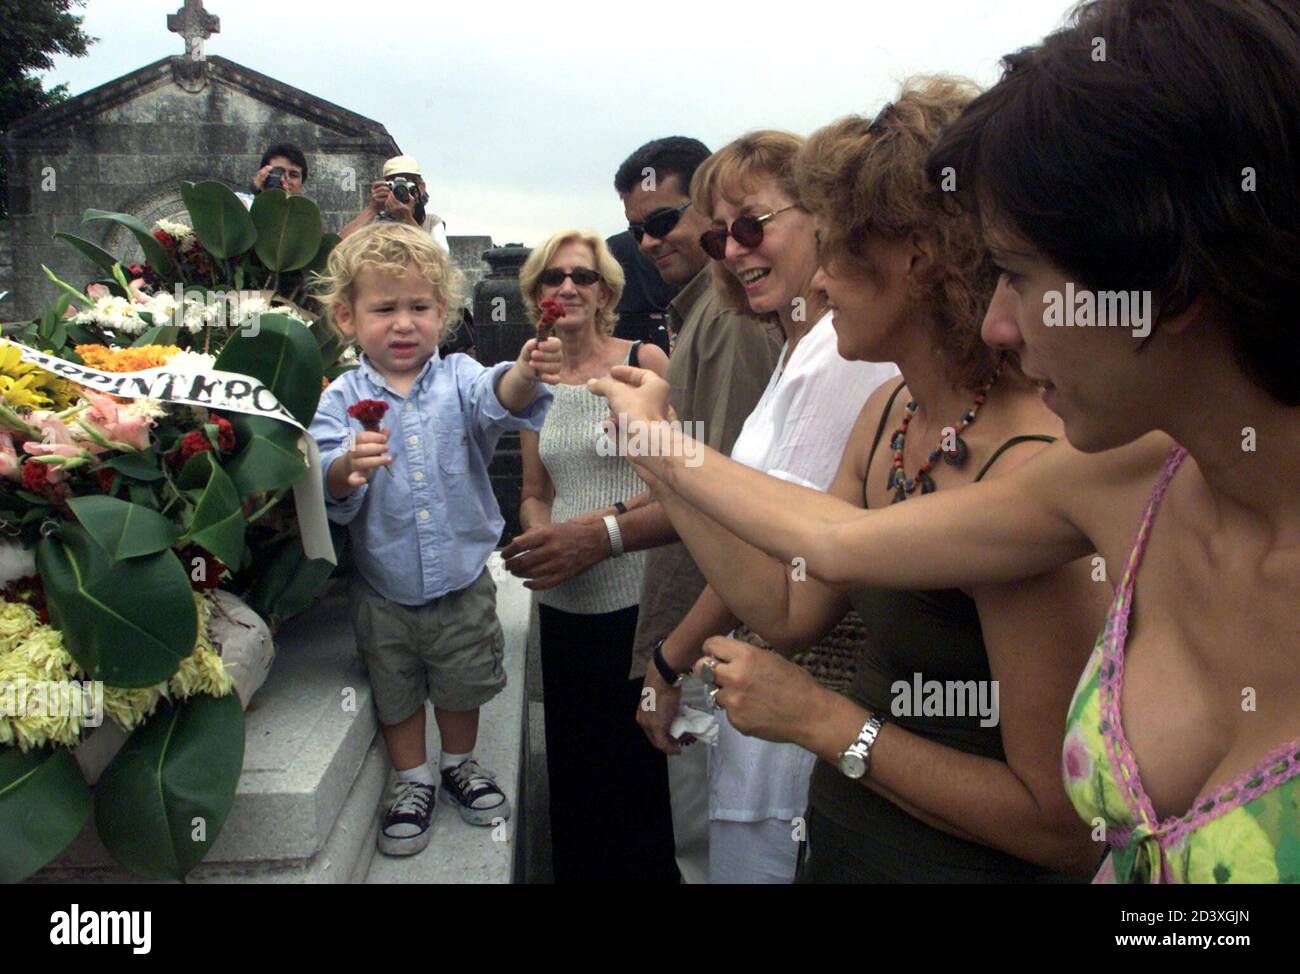 Anan Rodes (L), petit-fils du photographe cubain Alberto Korda, remet des  fleurs à des parents lors des funérailles de son grand-père le 29 mai 2001  dans la cimenterie Colon de la Havane.